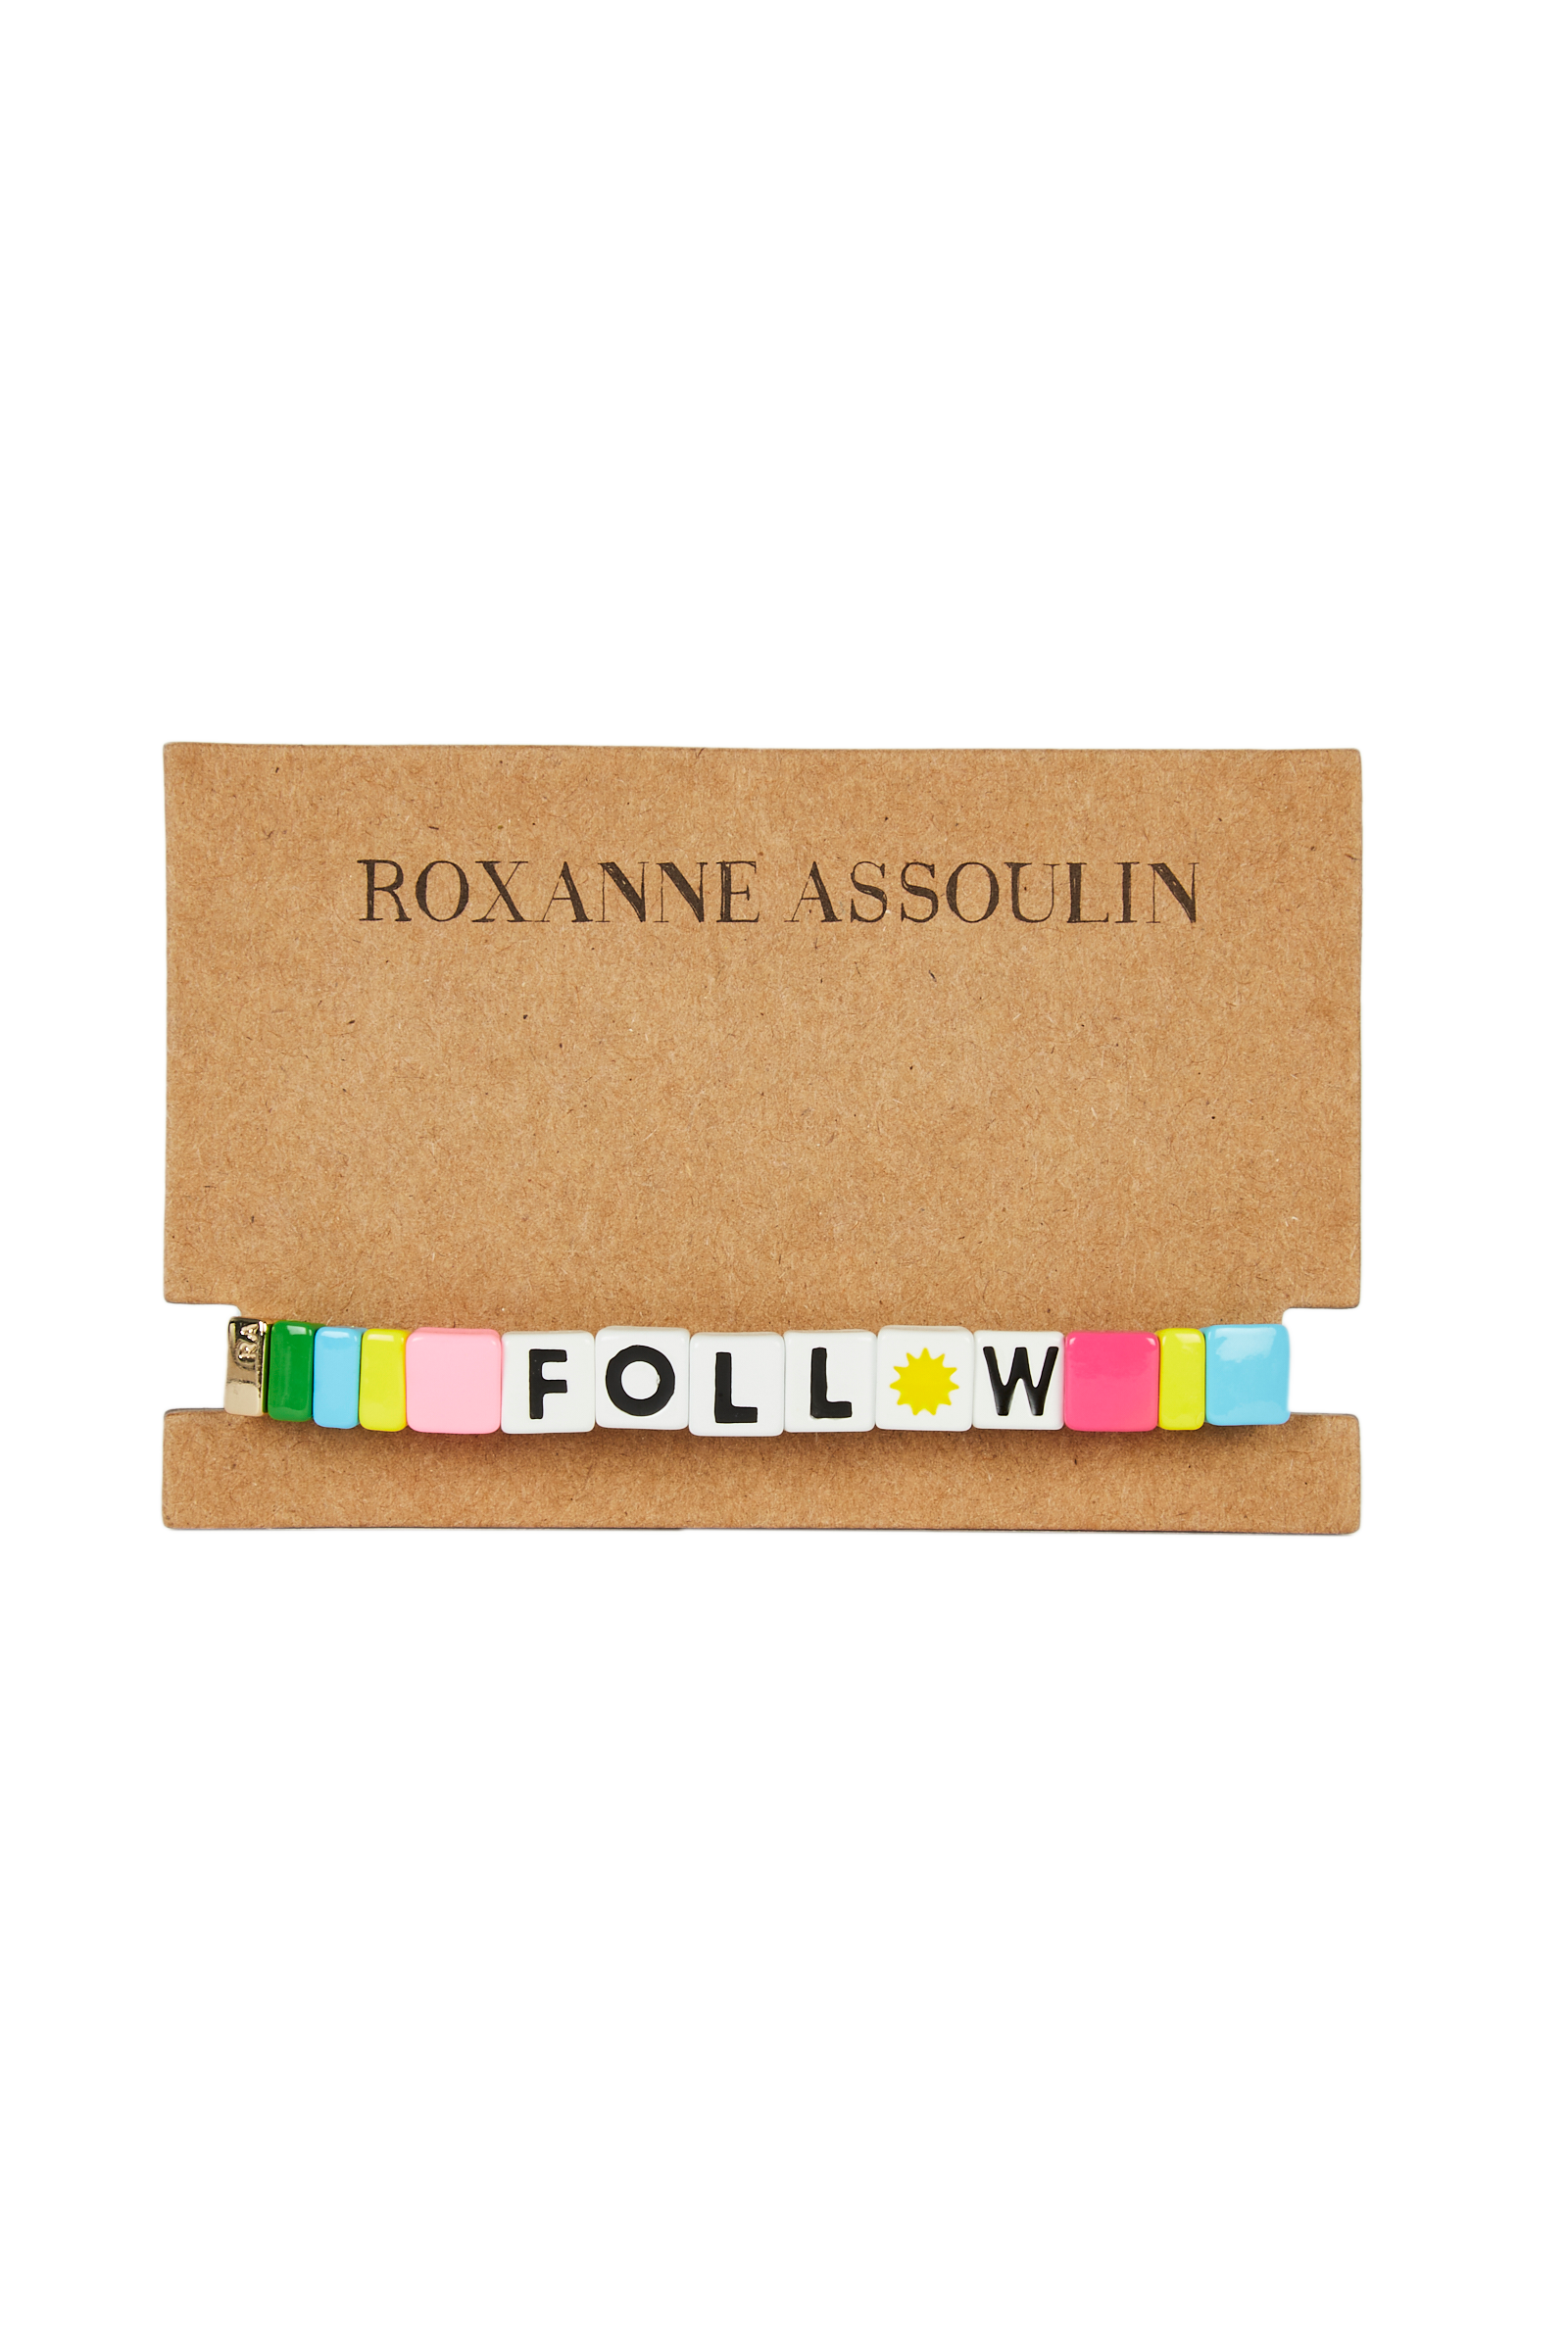 Roxanne Assoulin - Follow the Sun Bracelet 